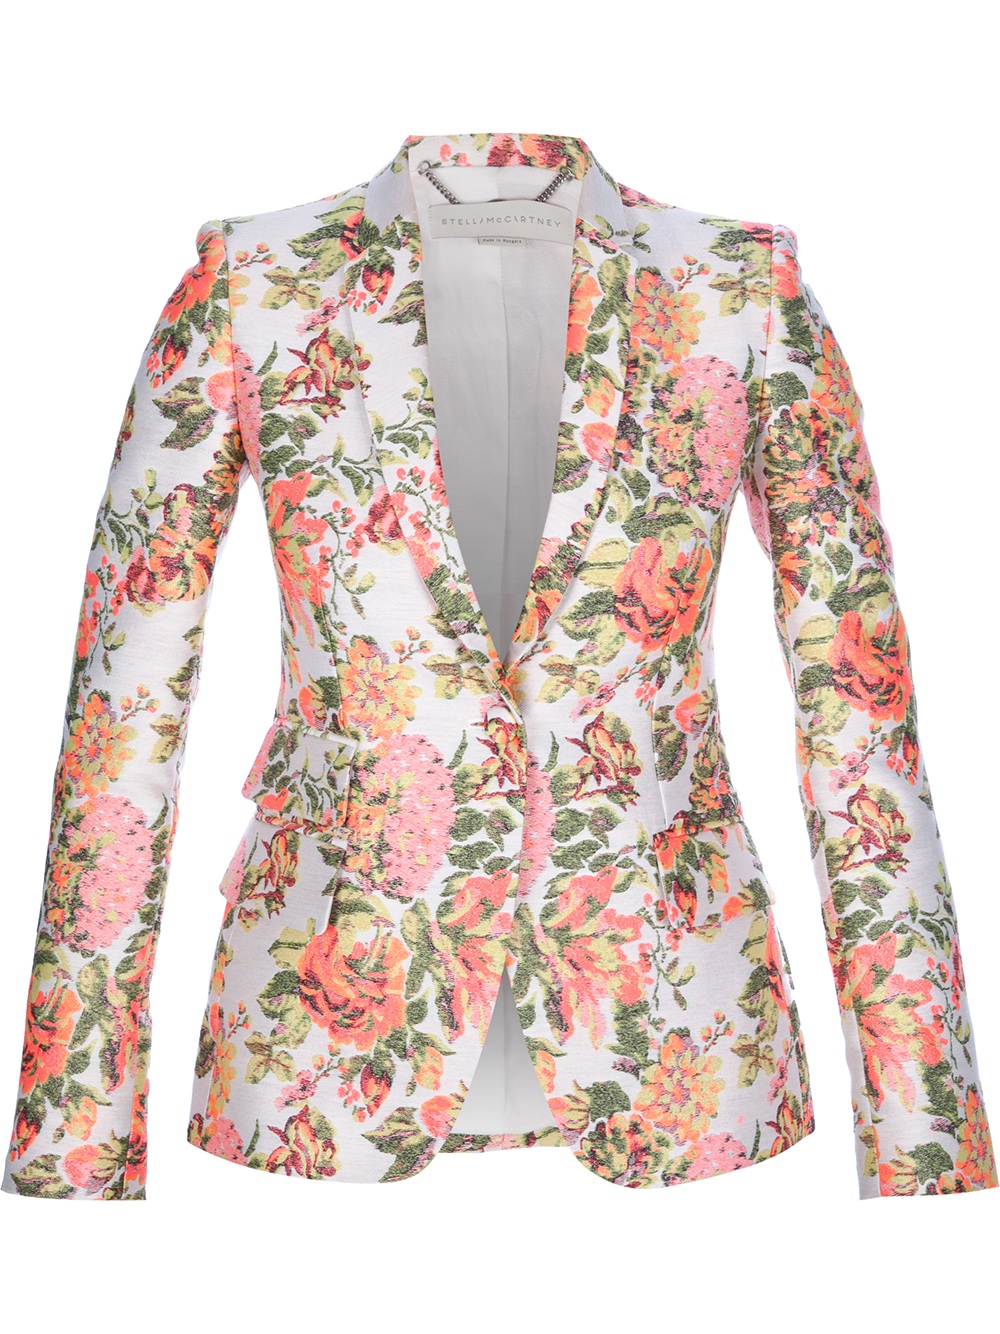 Stella McCartney Floral Blazer in Pink - Lyst